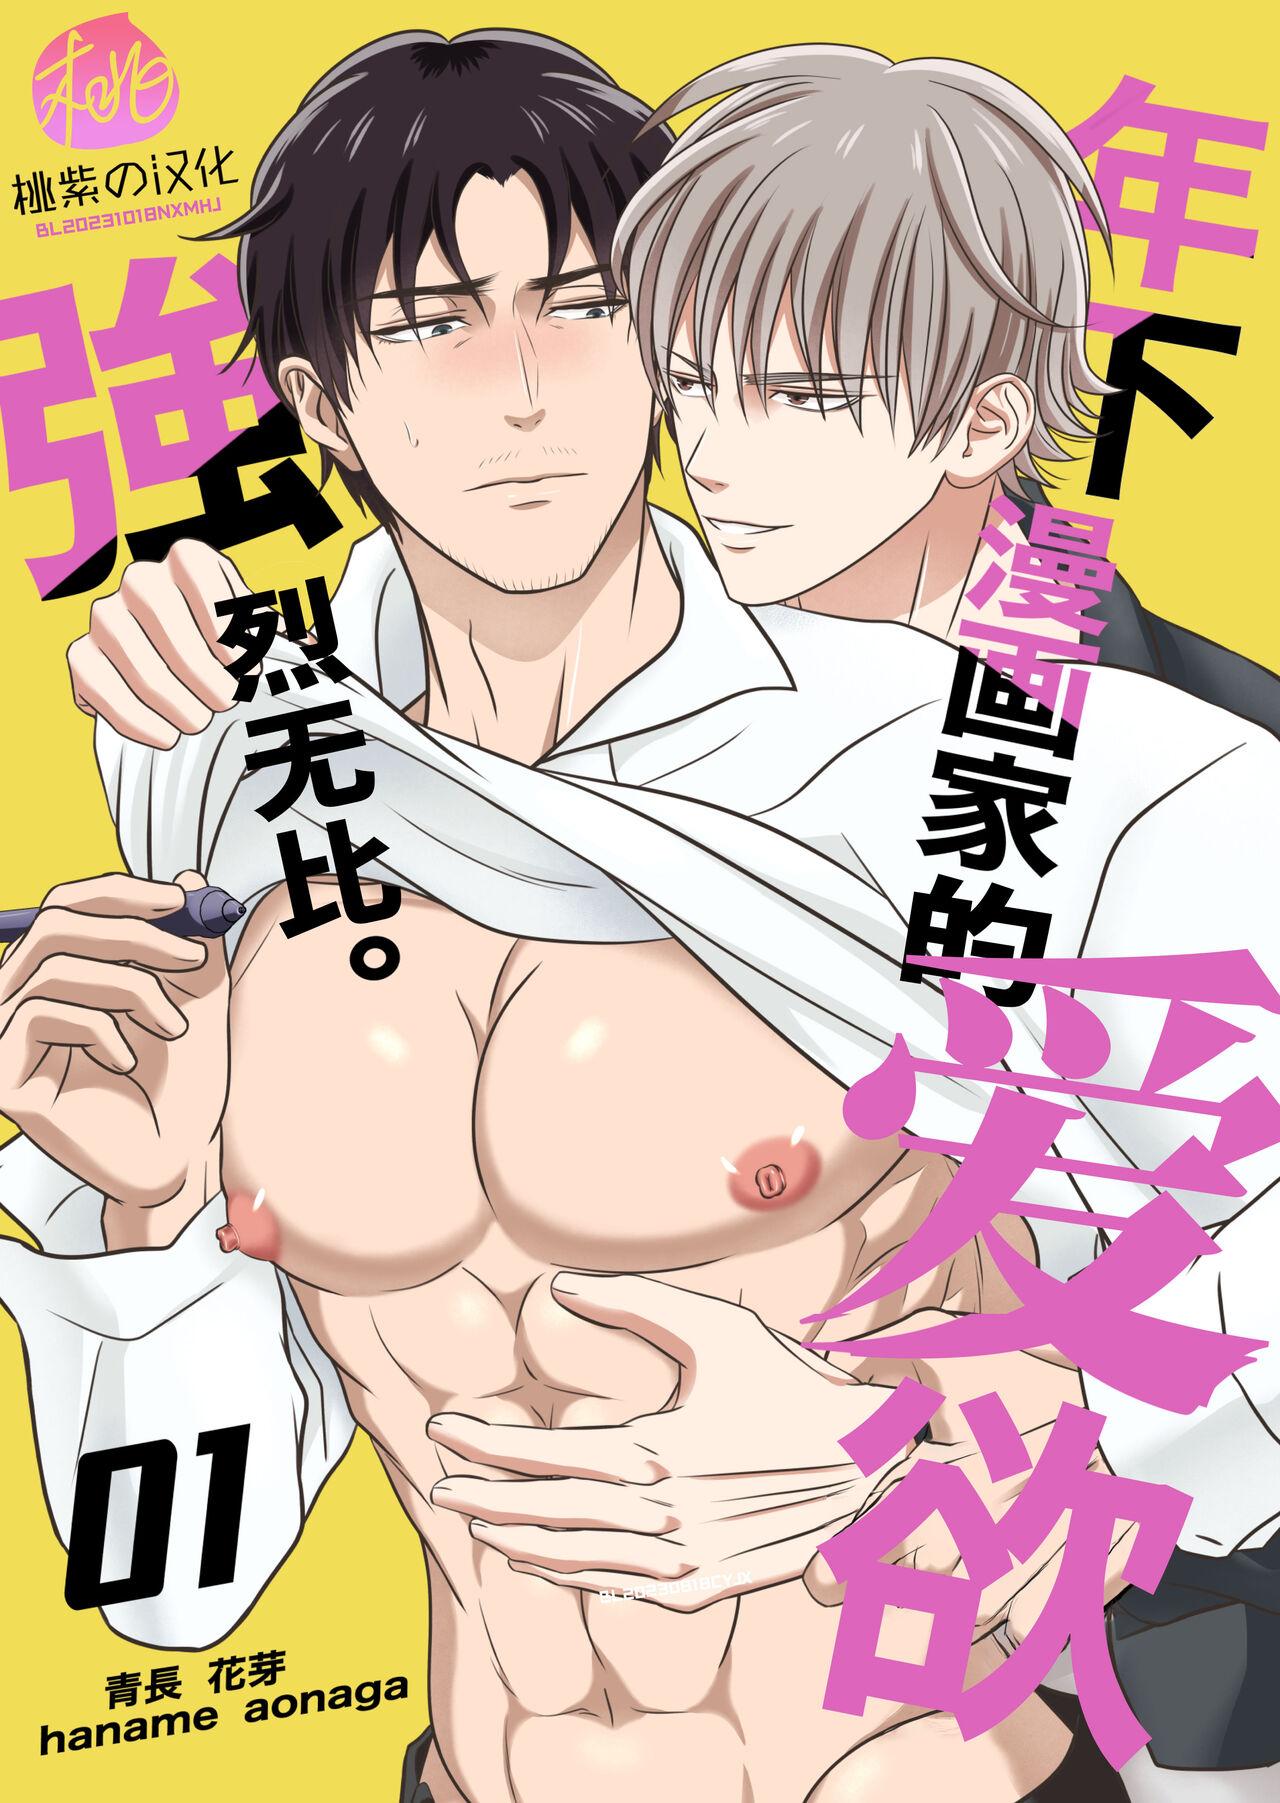 Sex Party Toshishita mangakka no ai ga tsuyo sugiru. 01 | 年下漫画家的爱欲强烈无比。第1卷 - Original Femdom Porn - Picture 1